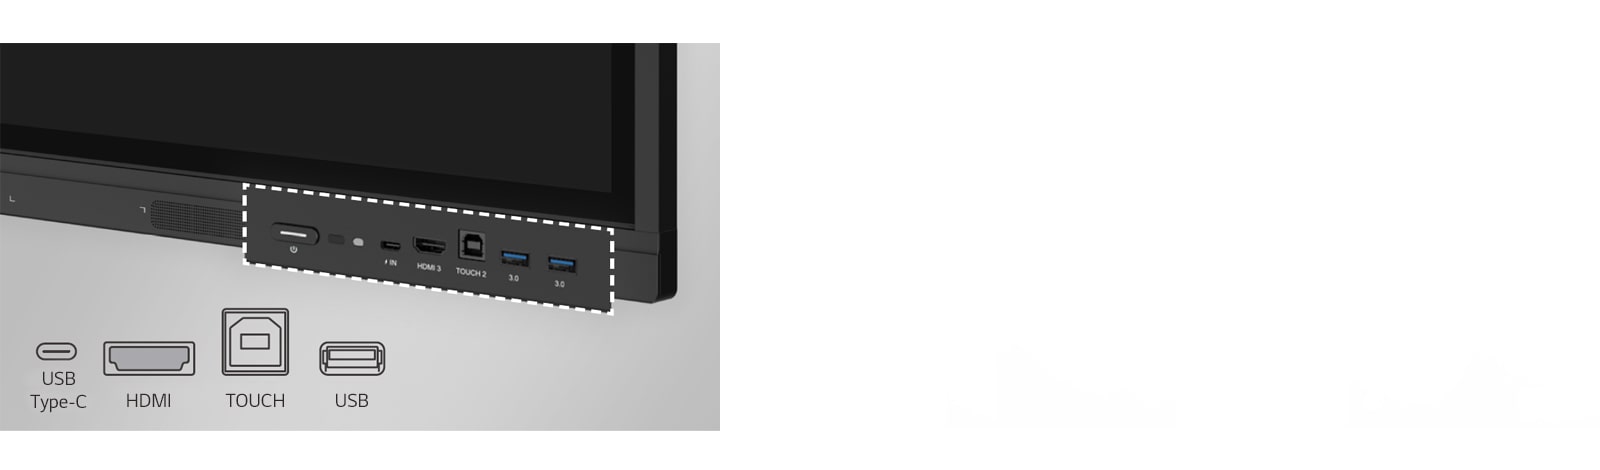 O LG CreateBoard possui portas na frente, como USB e HDMI.